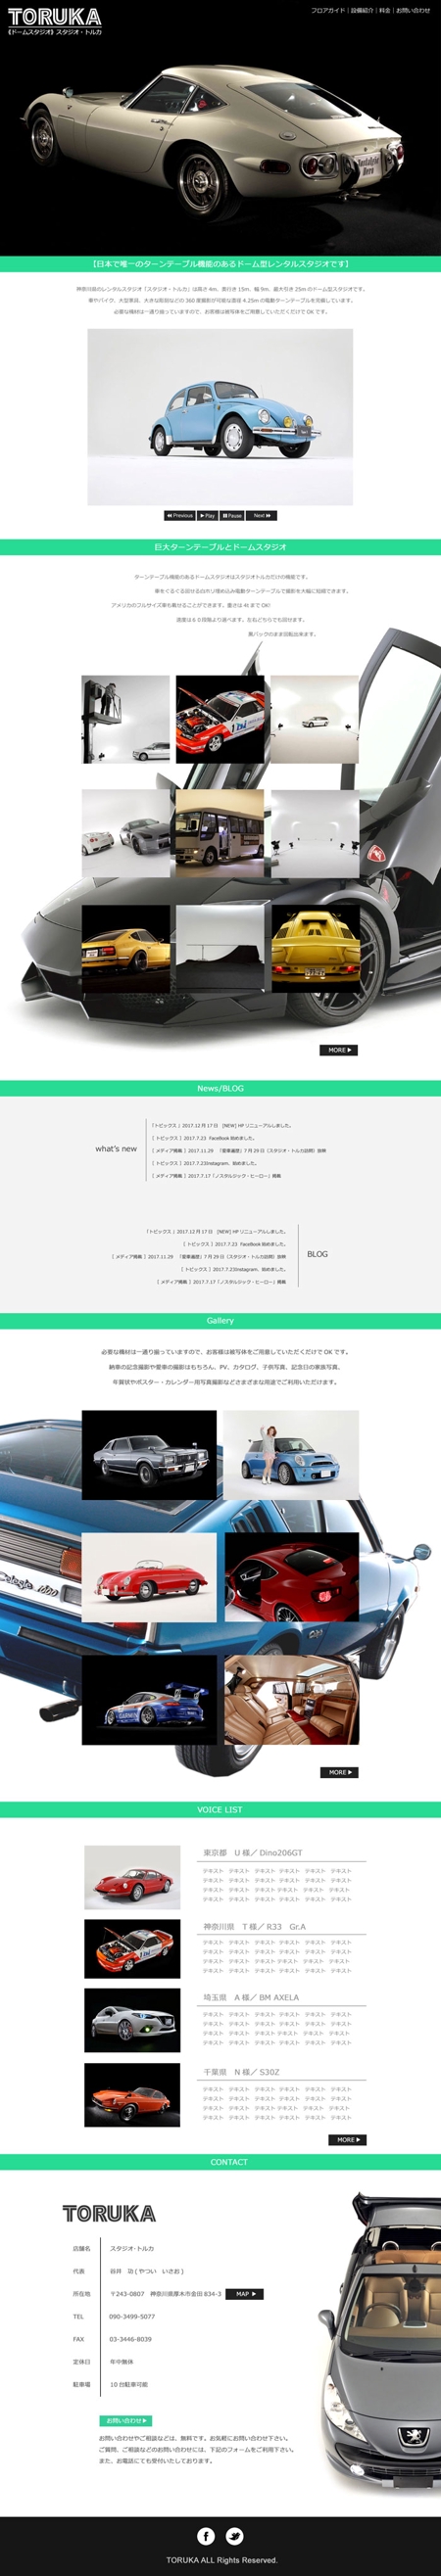 DESIGN-berlinetta (berlinetta)さんの【大手クライアント様も利用！】車専門のフォトスタジオのTOPページデザインを募集致します！への提案